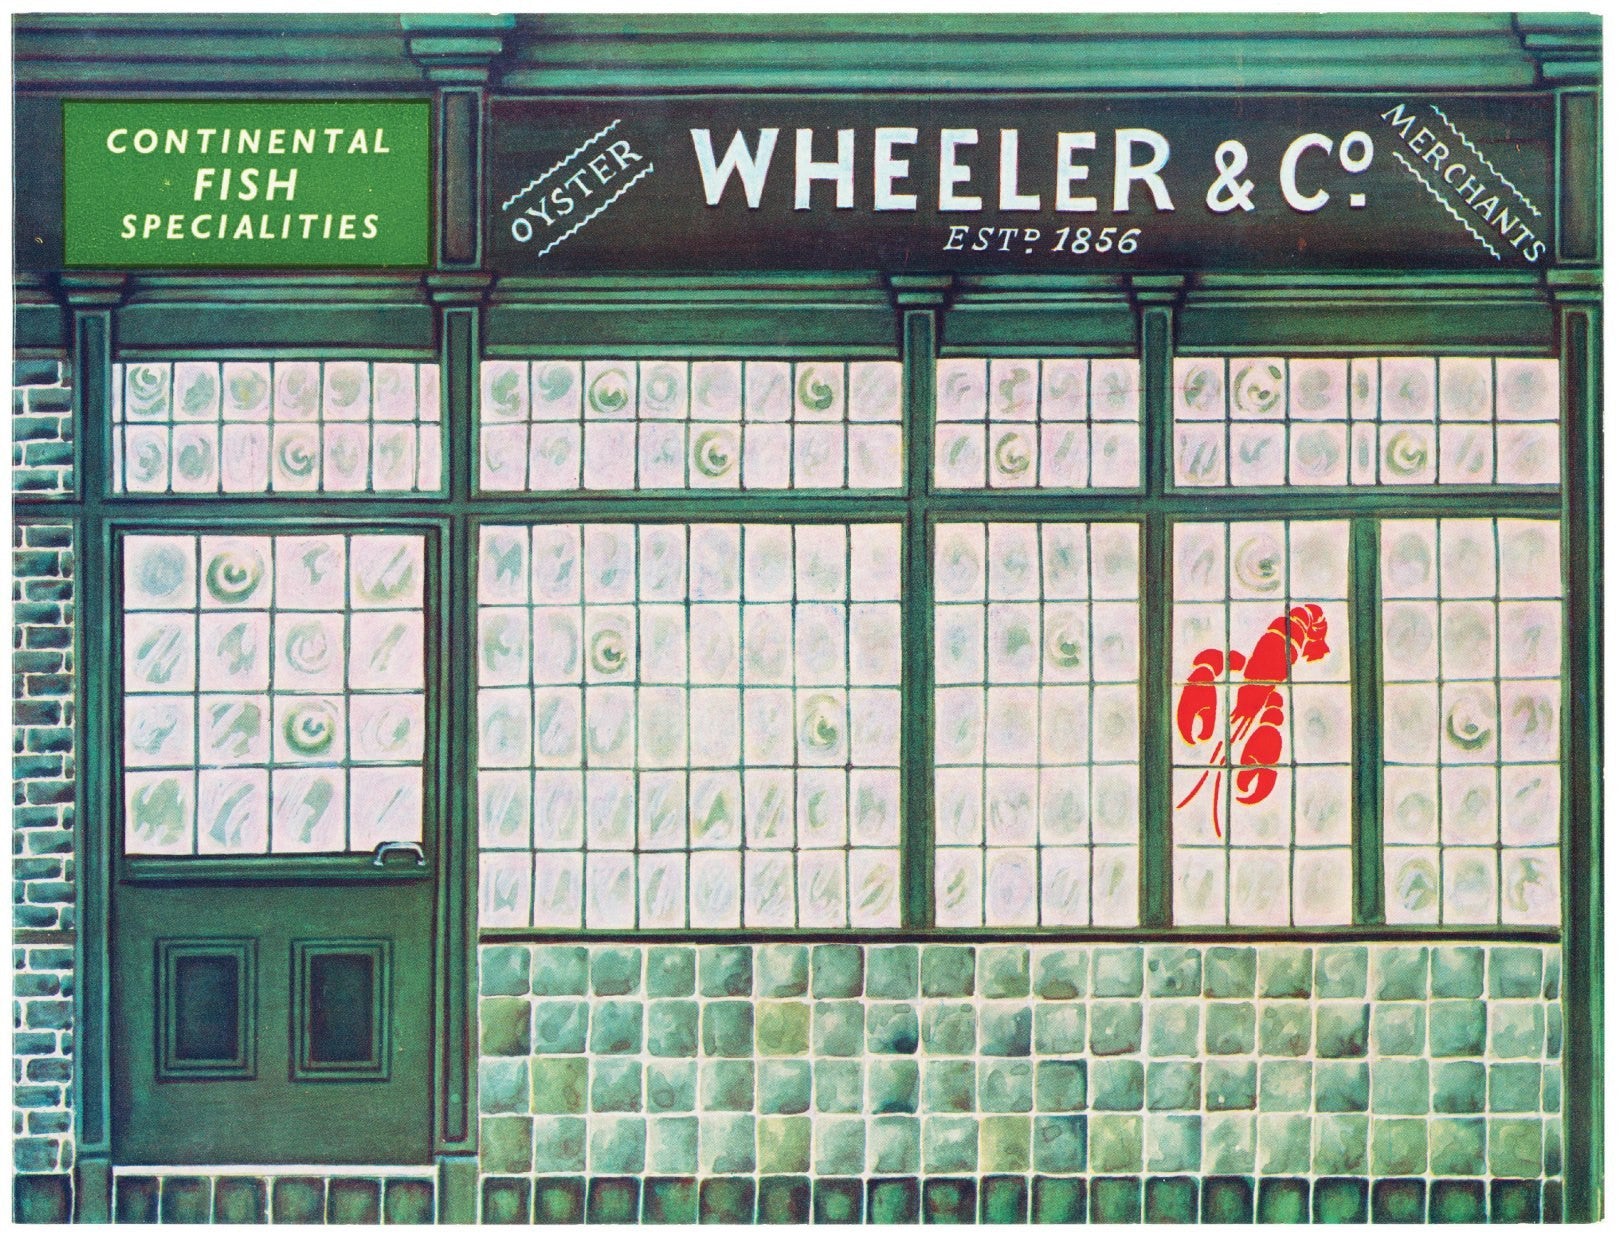 Wheeler & Co., London, 1950s